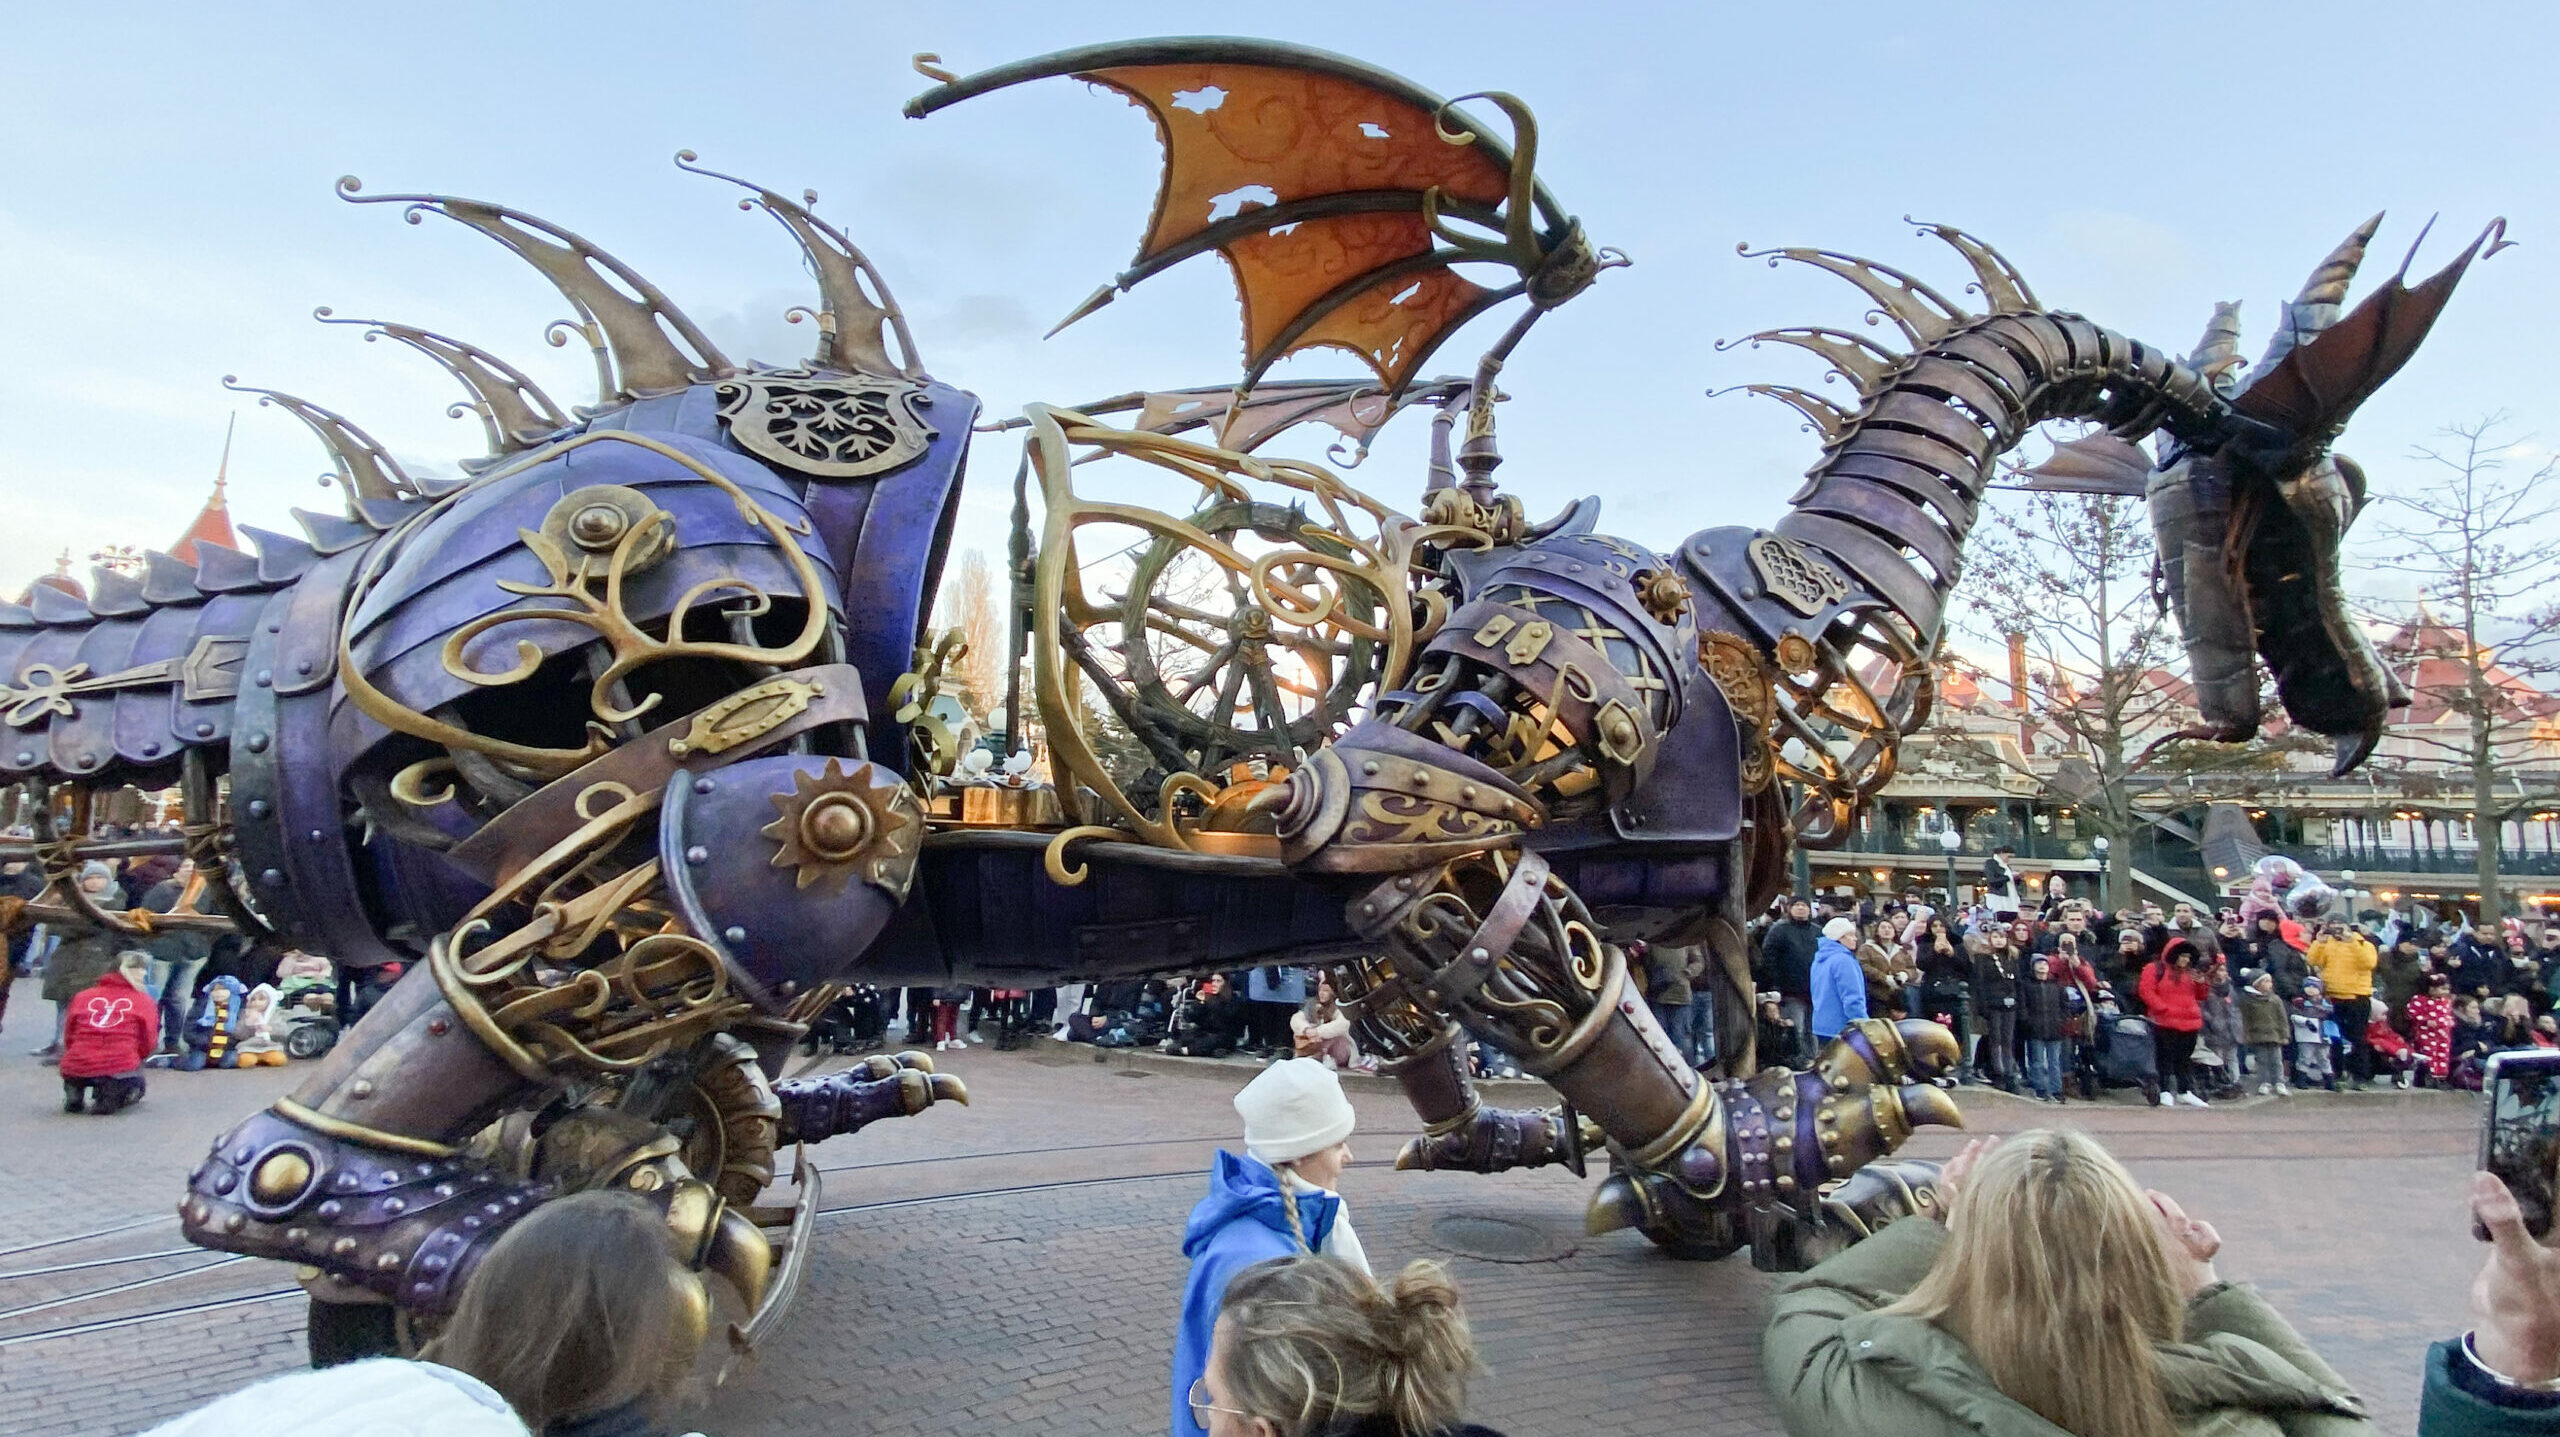 Disney parade in Disneyland Paris park in Marne-la-Vallee